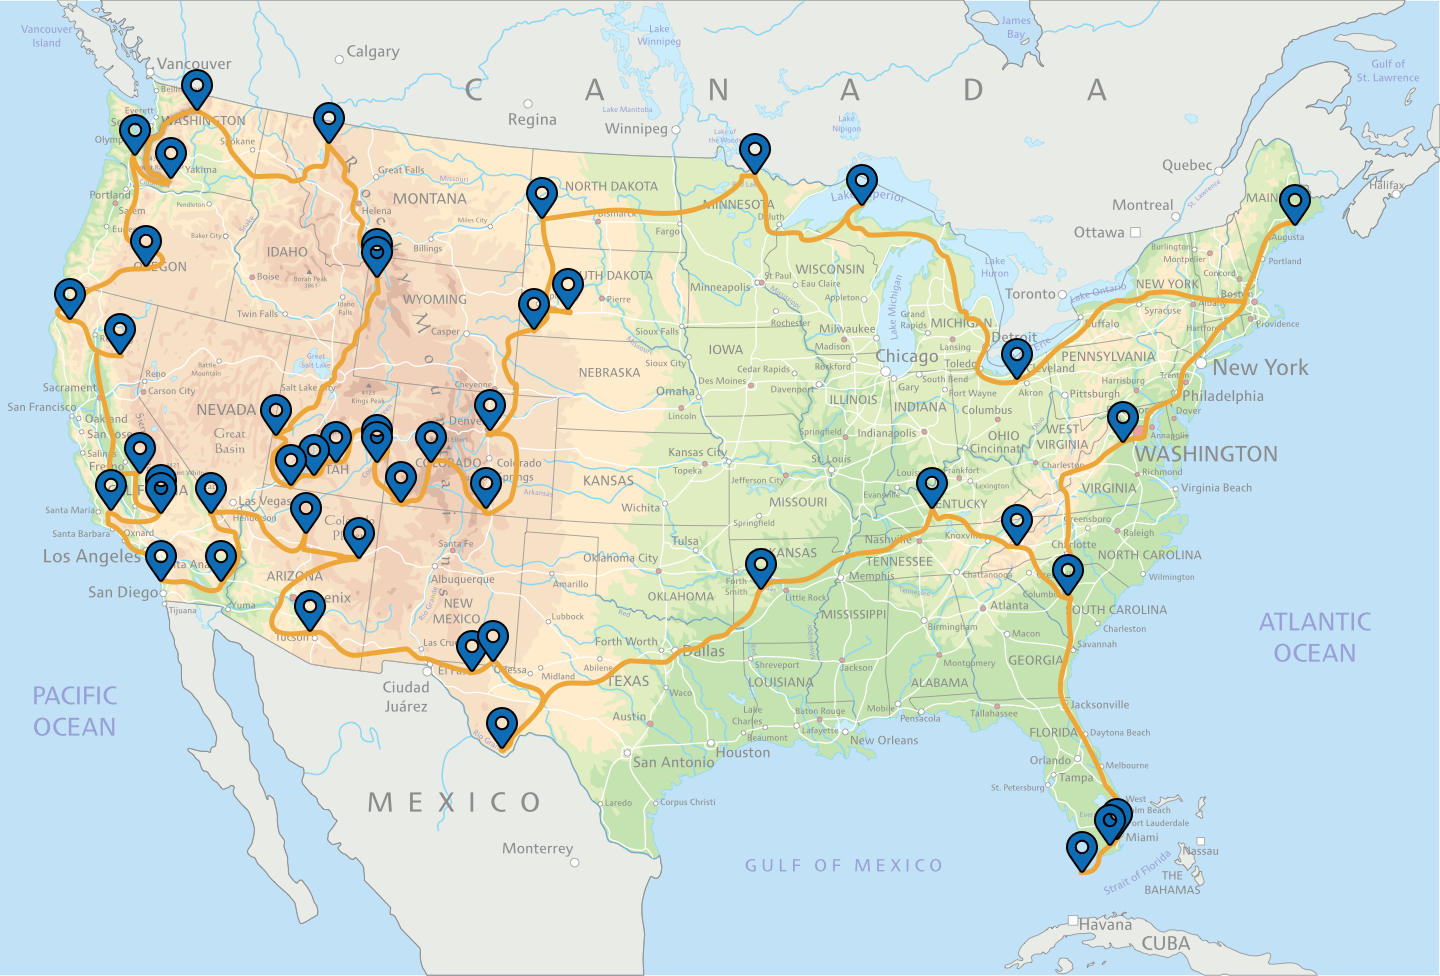 us-national-parks-road-map-sexiz-pix